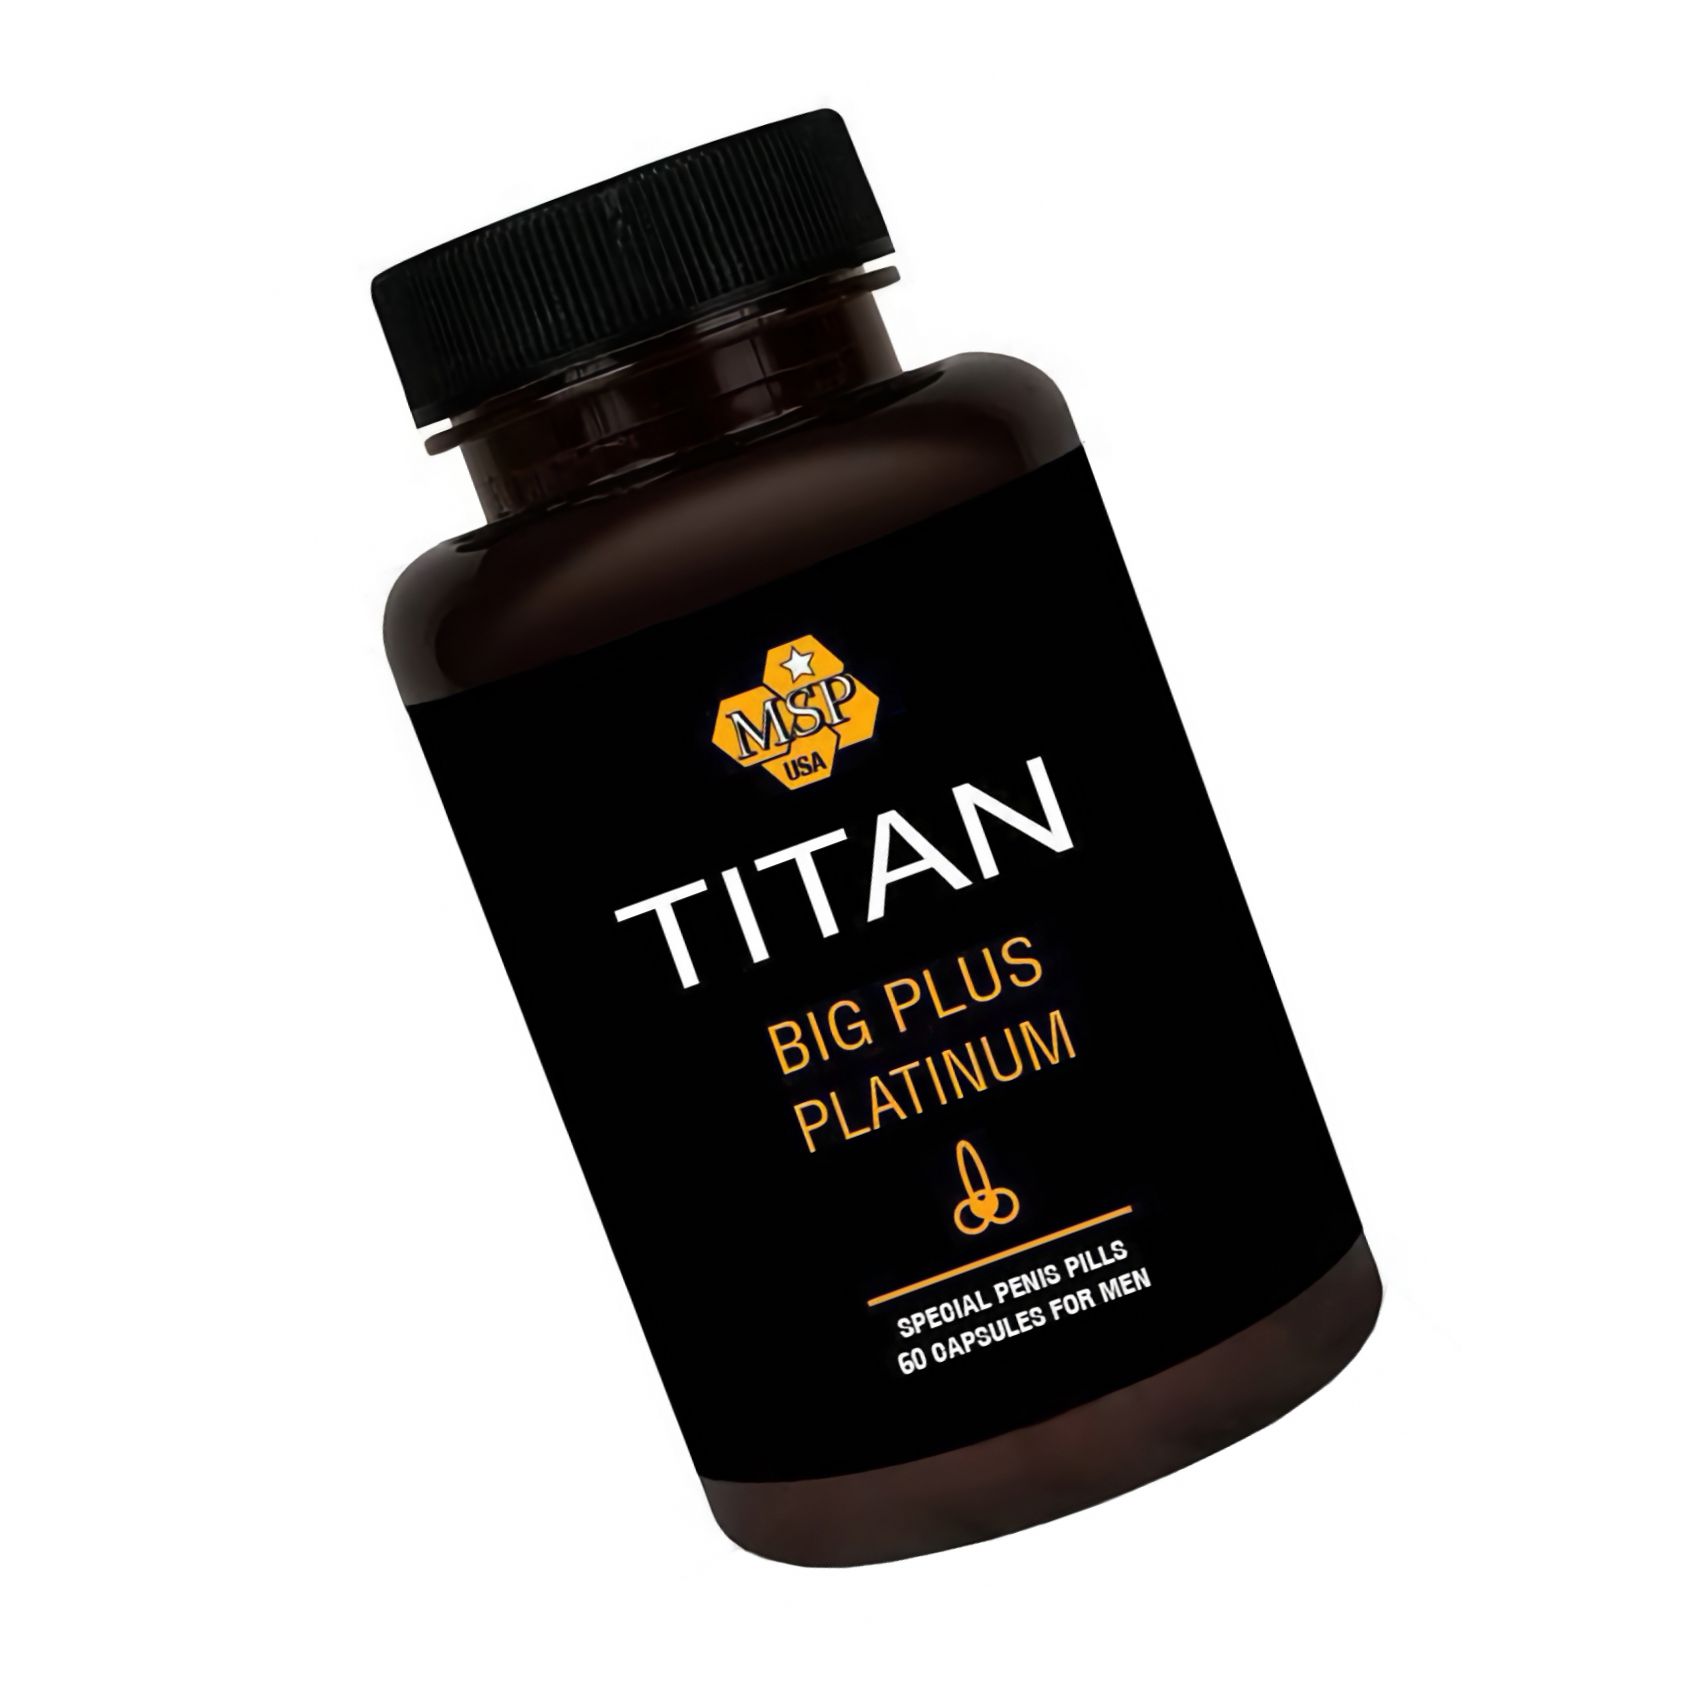 Titan Big Plus Penis Enlargement Pills